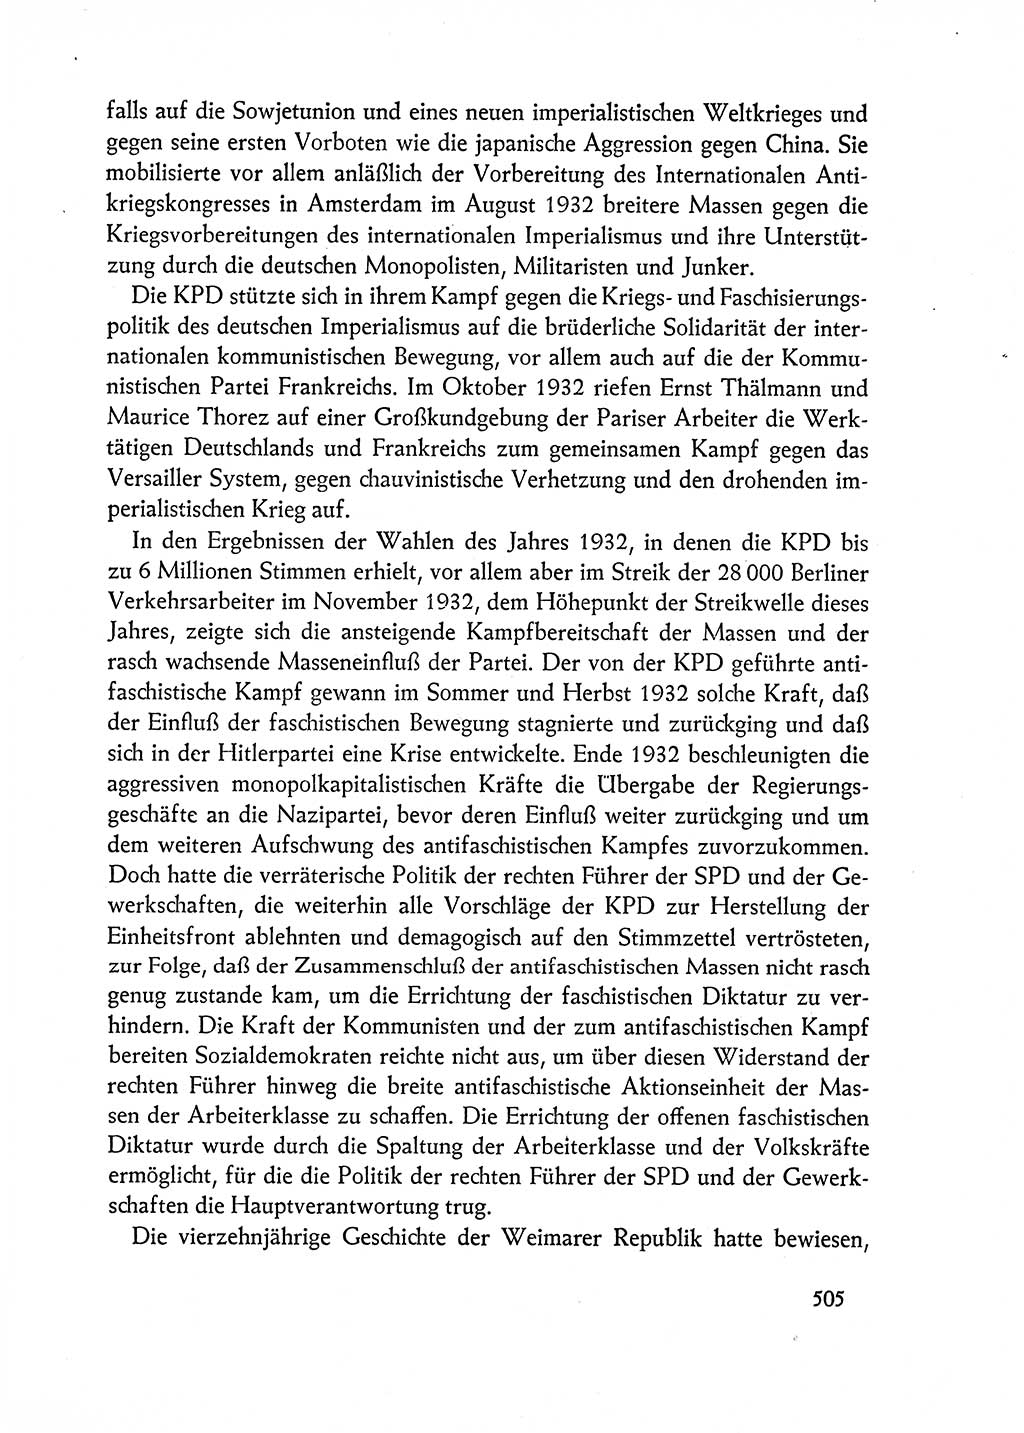 Dokumente der Sozialistischen Einheitspartei Deutschlands (SED) [Deutsche Demokratische Republik (DDR)] 1962-1963, Seite 505 (Dok. SED DDR 1962-1963, S. 505)